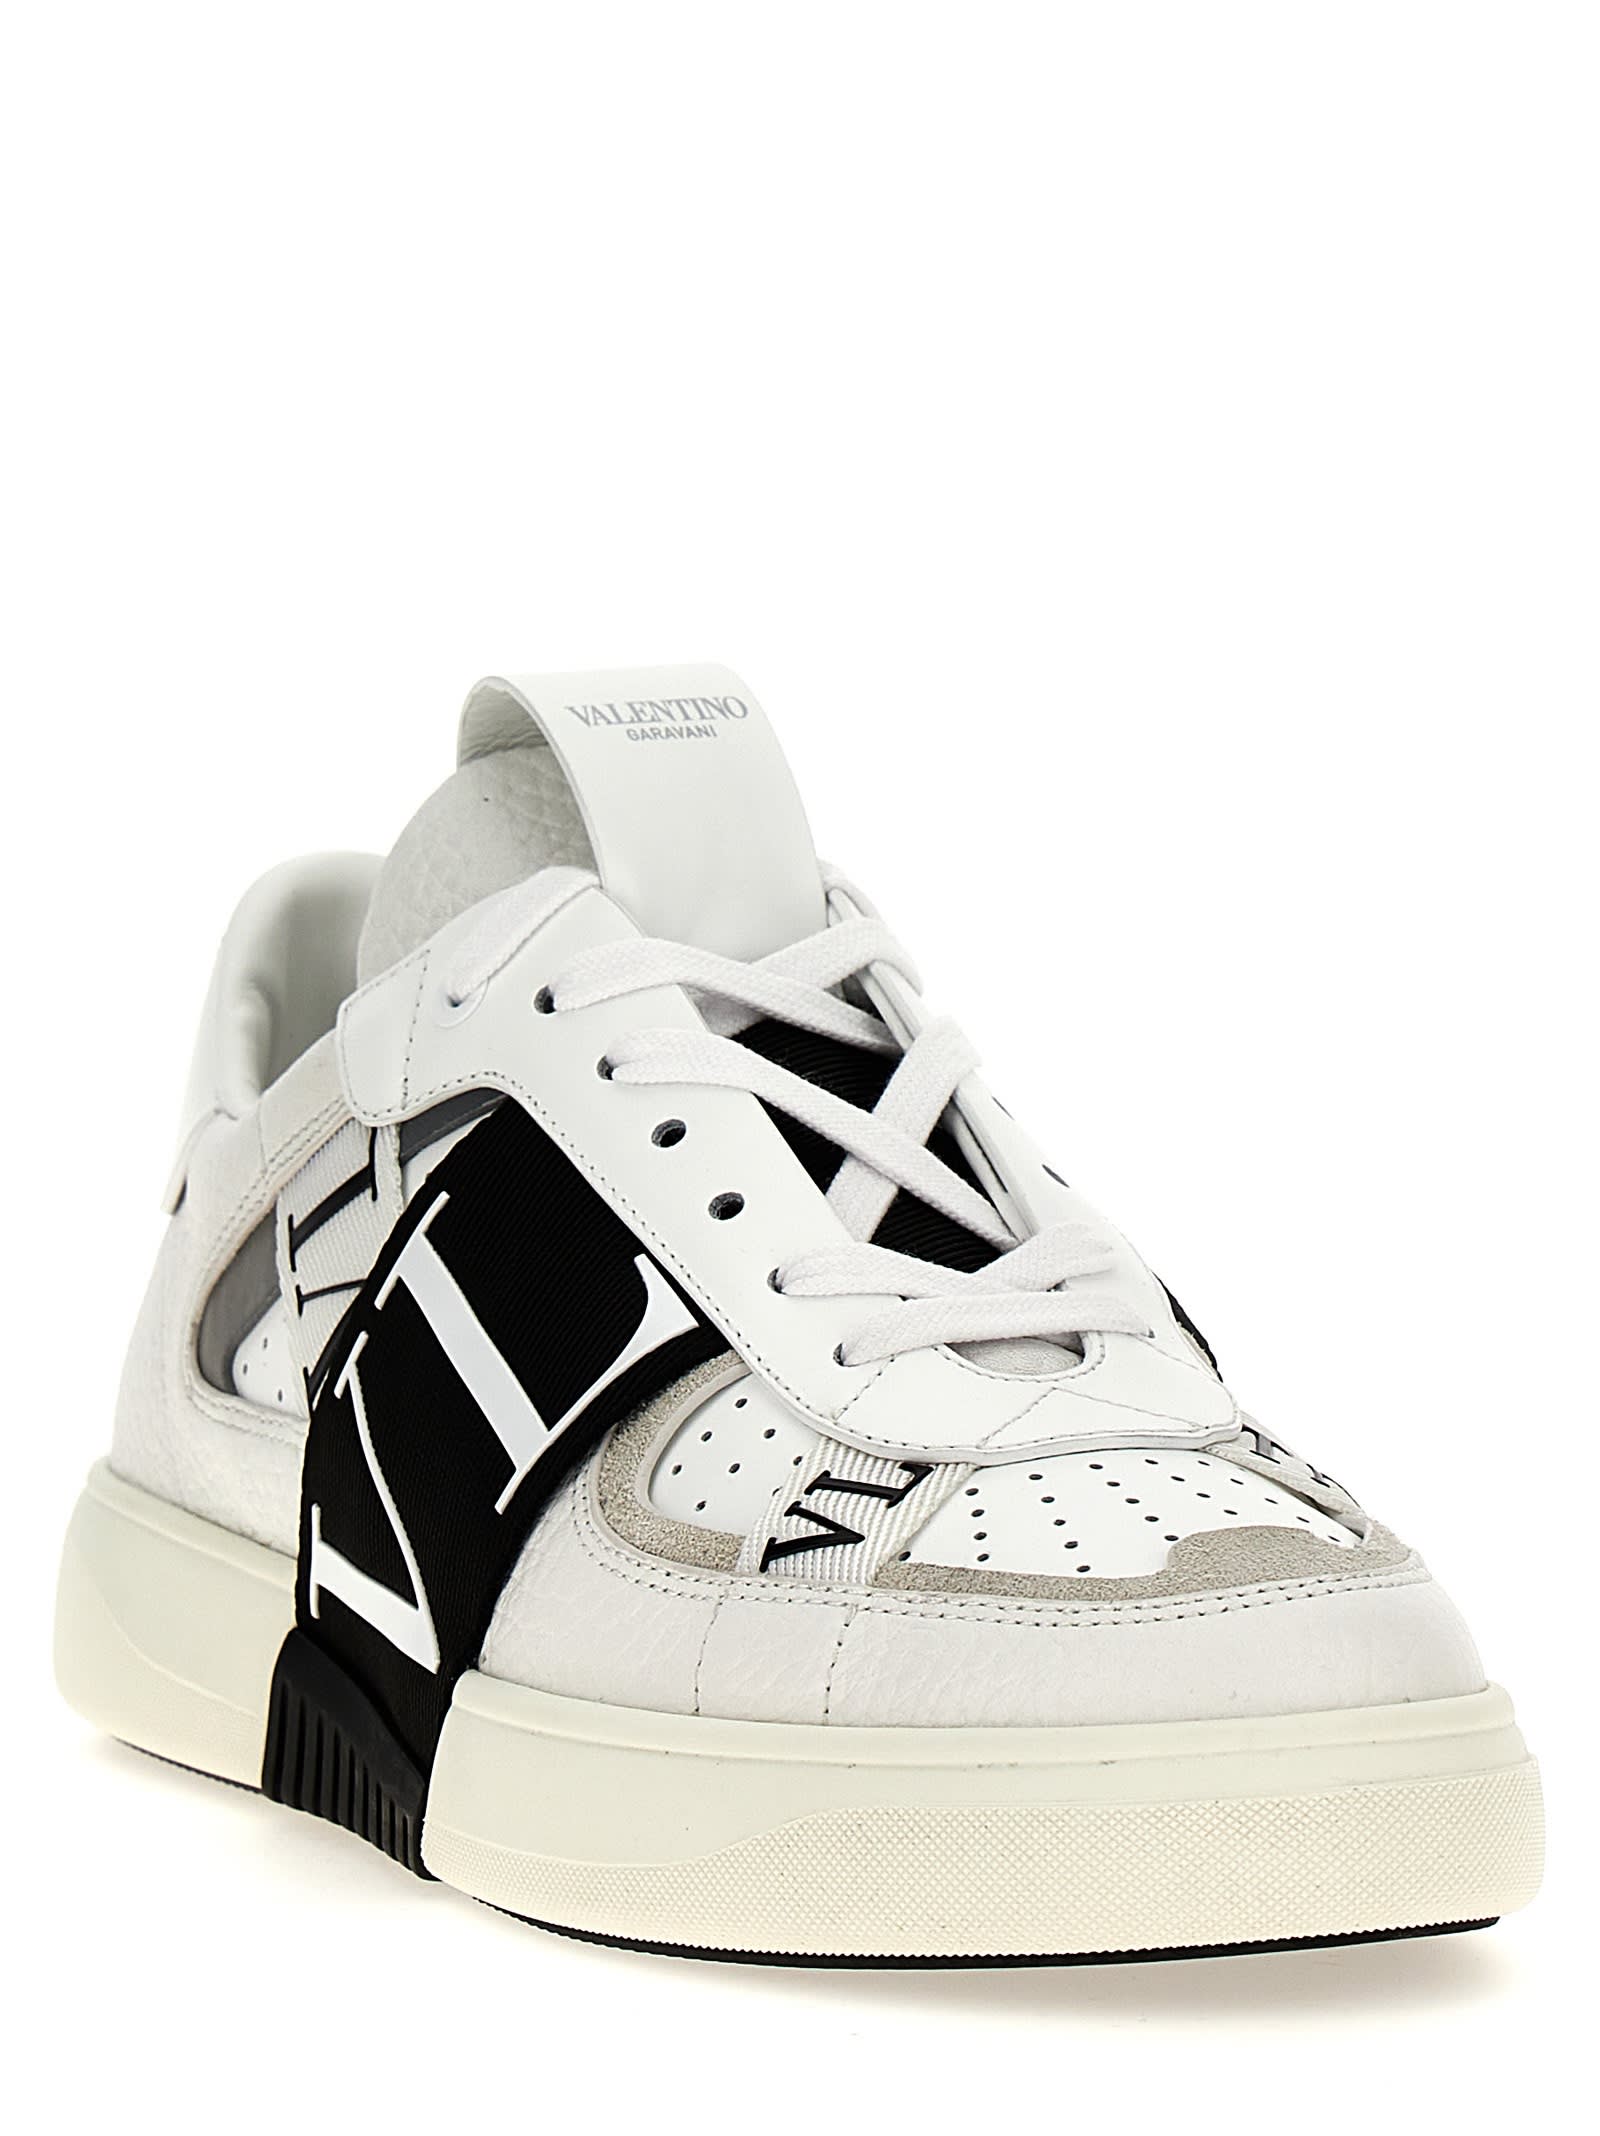 Shop Valentino Garavani Vl7n Sneakers In White/black